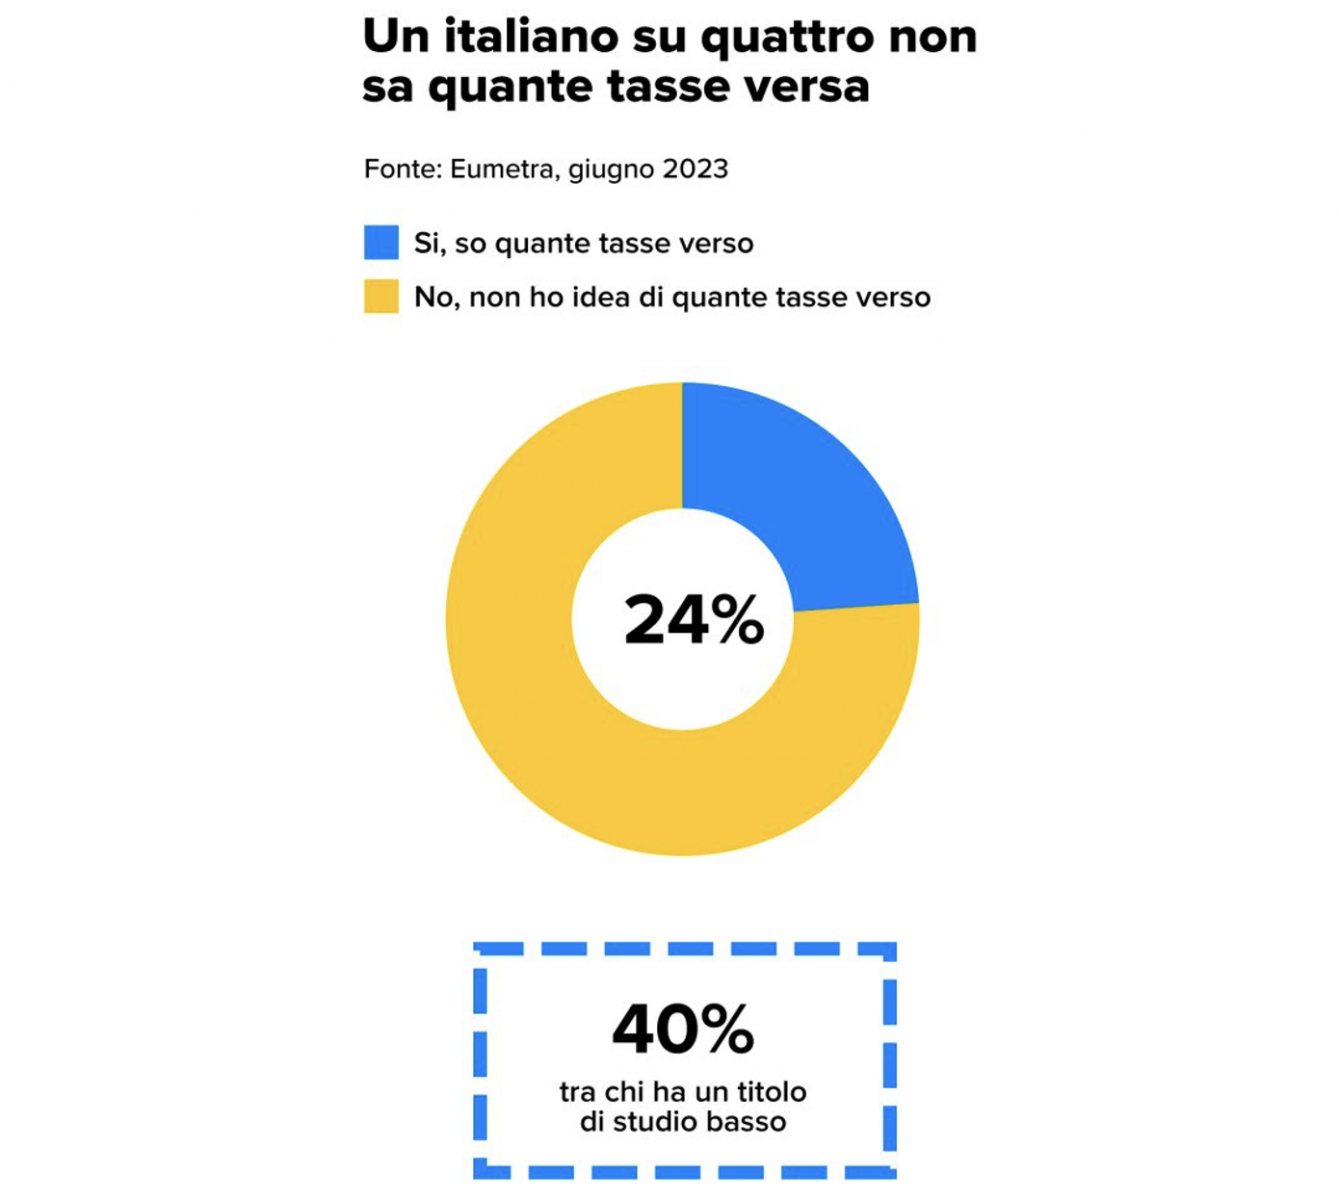 Un italiano su quattro non sa quante tasse versa